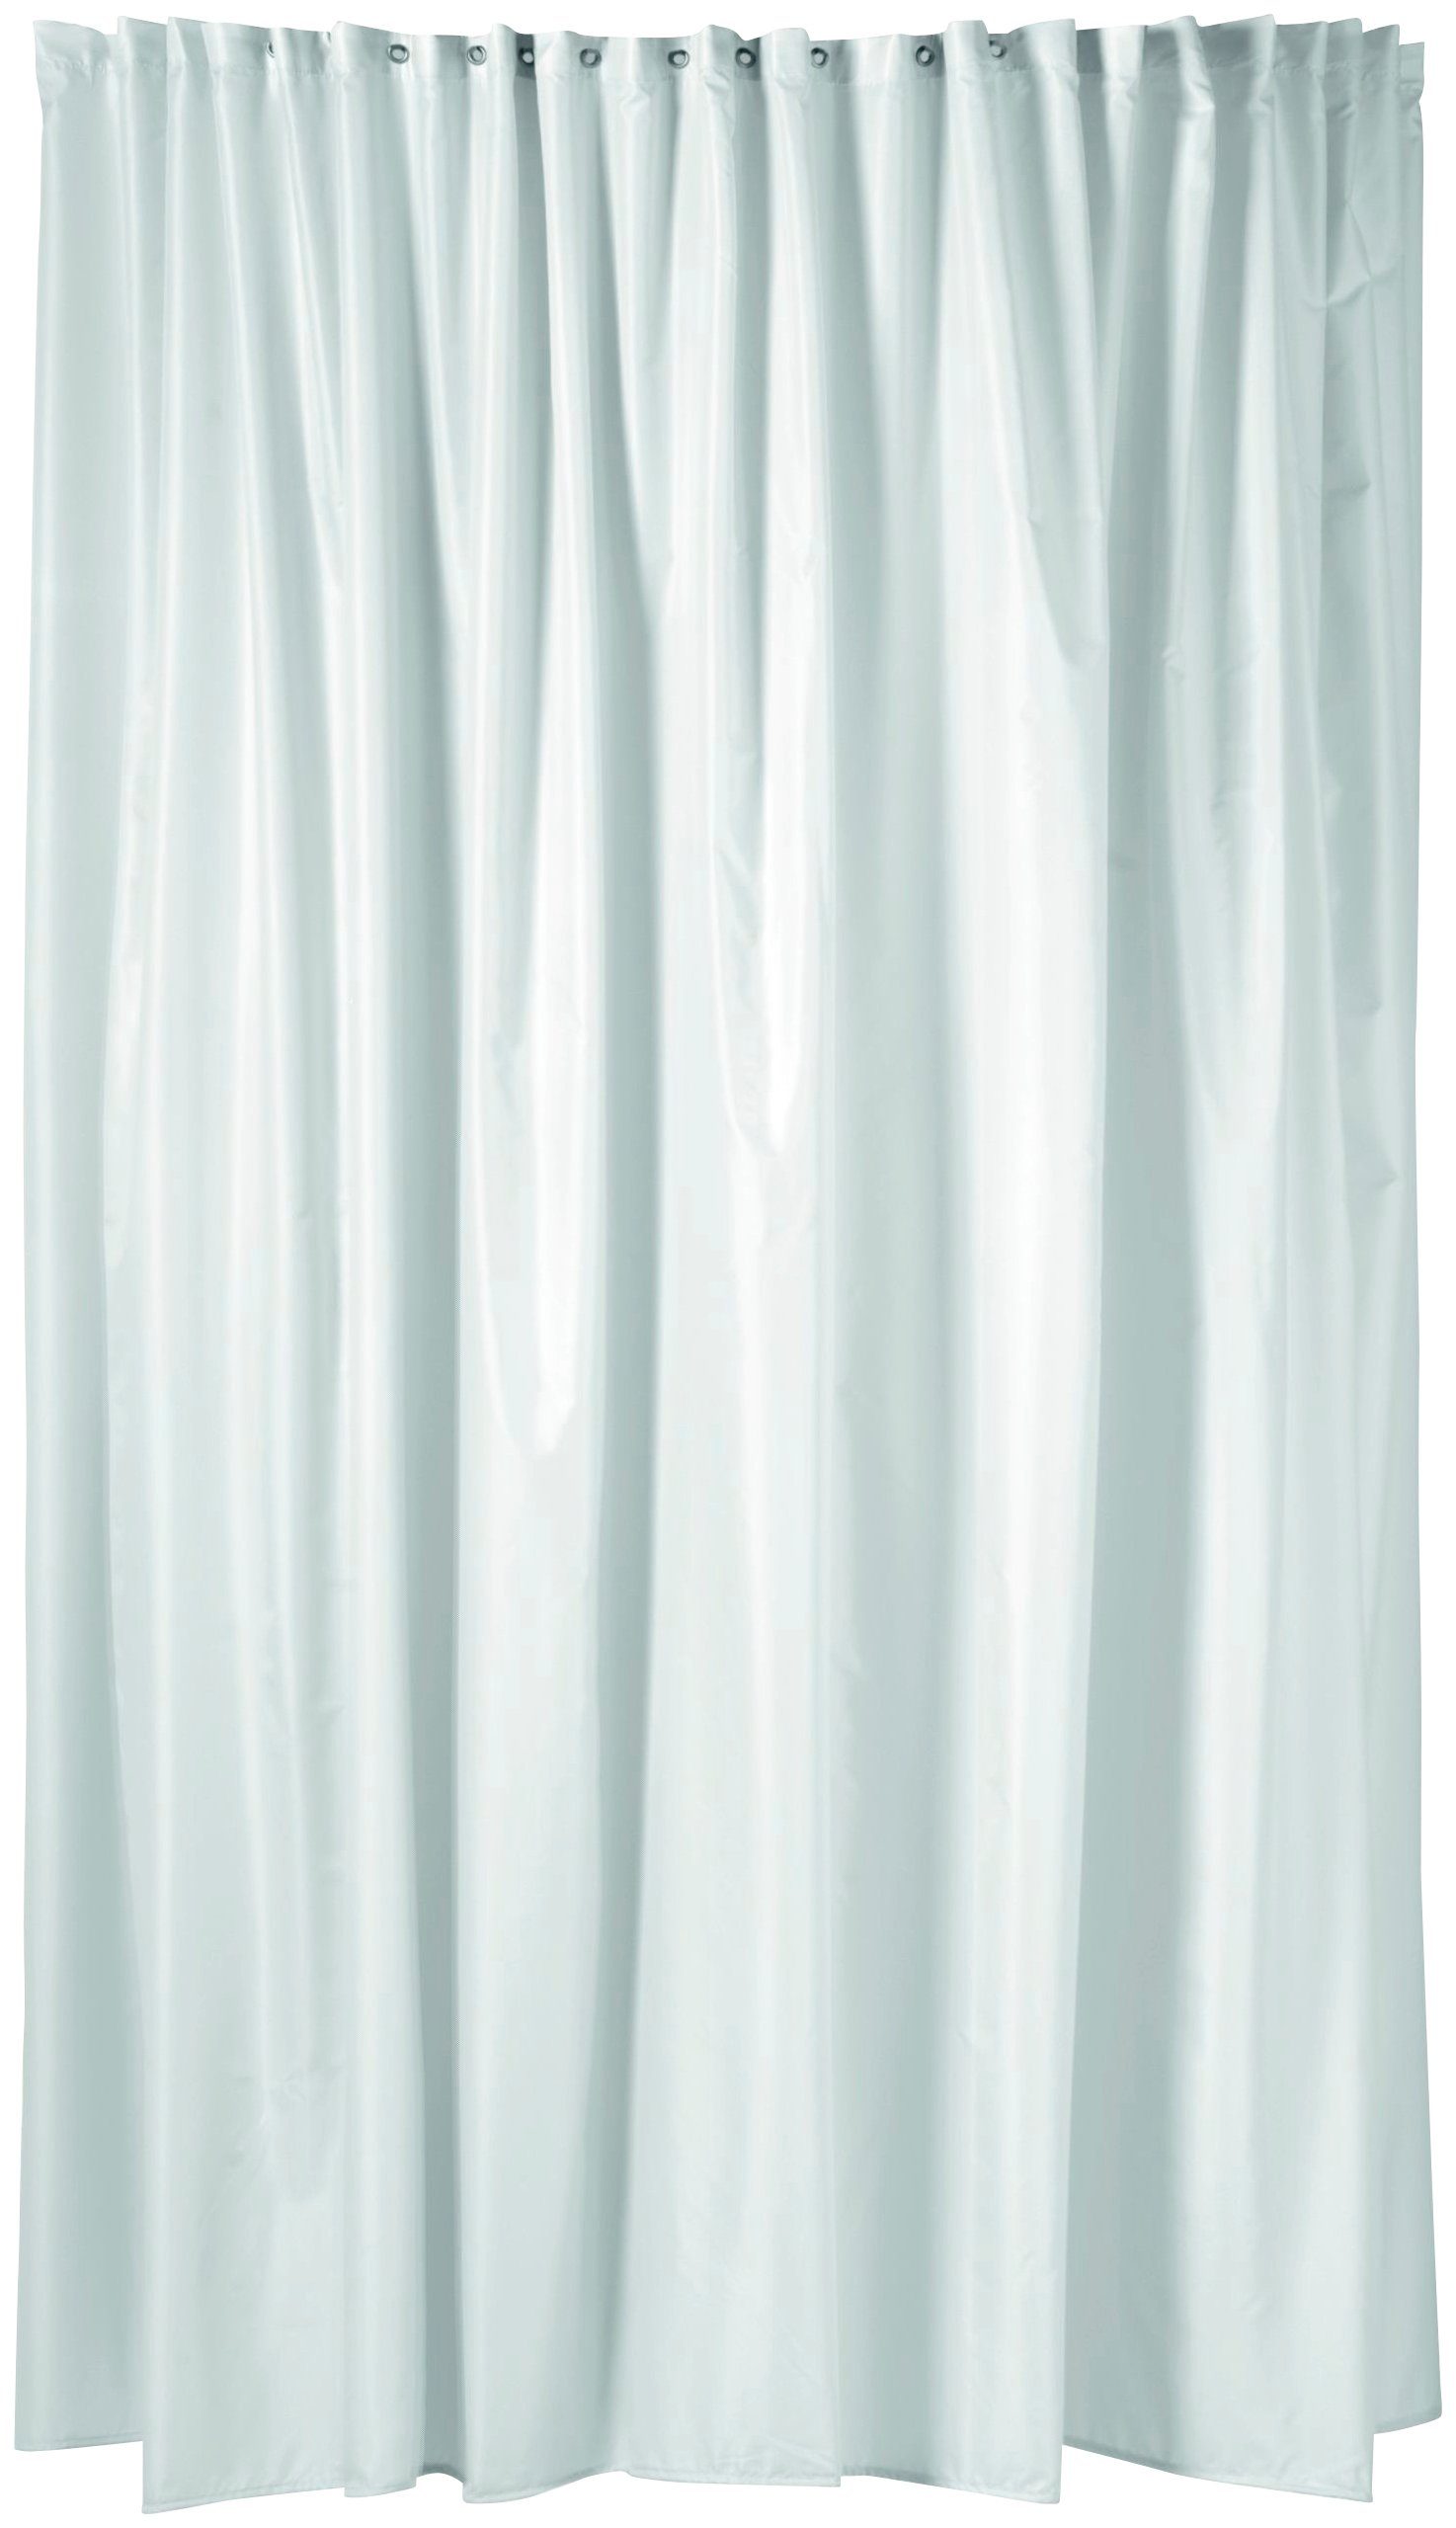 ERLAU Duschvorhang »Duschvorhang DV-180« Breite 240 cm, Höhe 200 cm, weiß mit Satinstreifen-HomeTrends